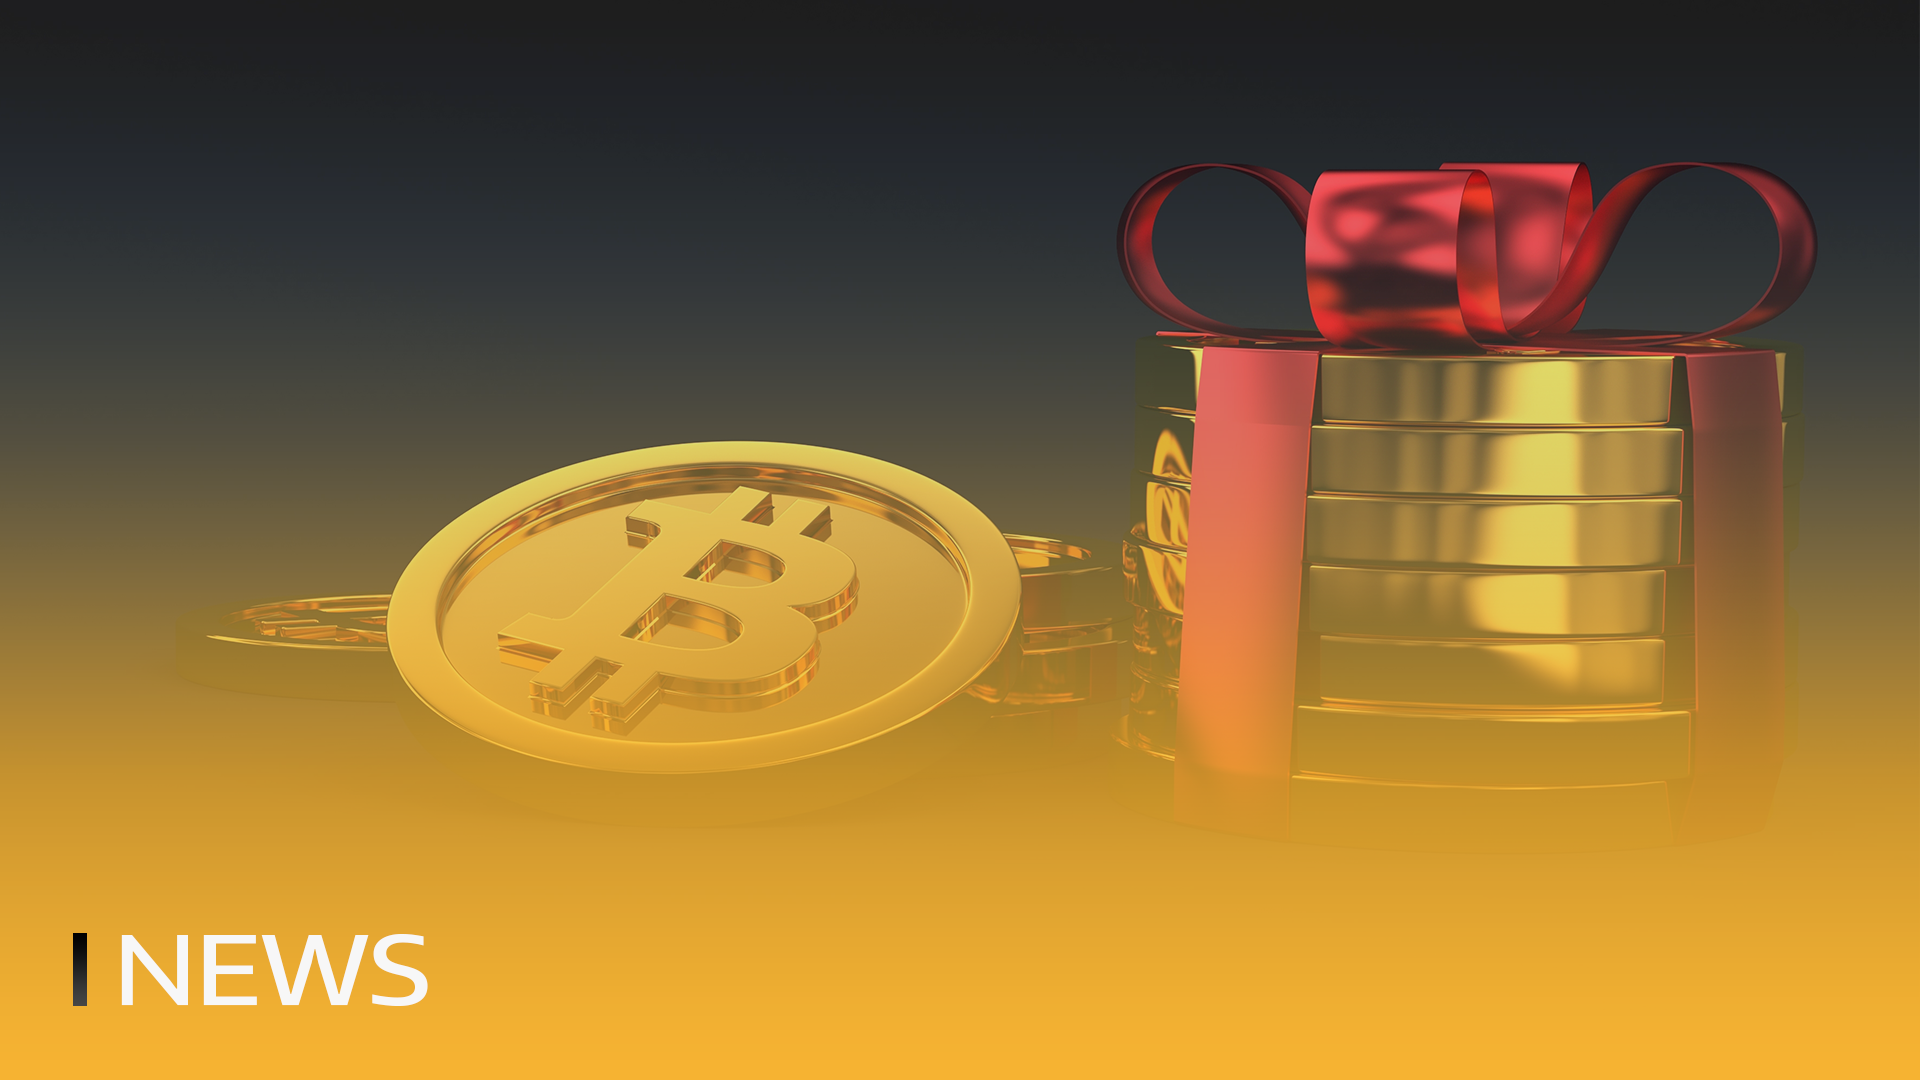 Bitcoin fällt am 15. Jahrestag des Genesis-Tages um $3K